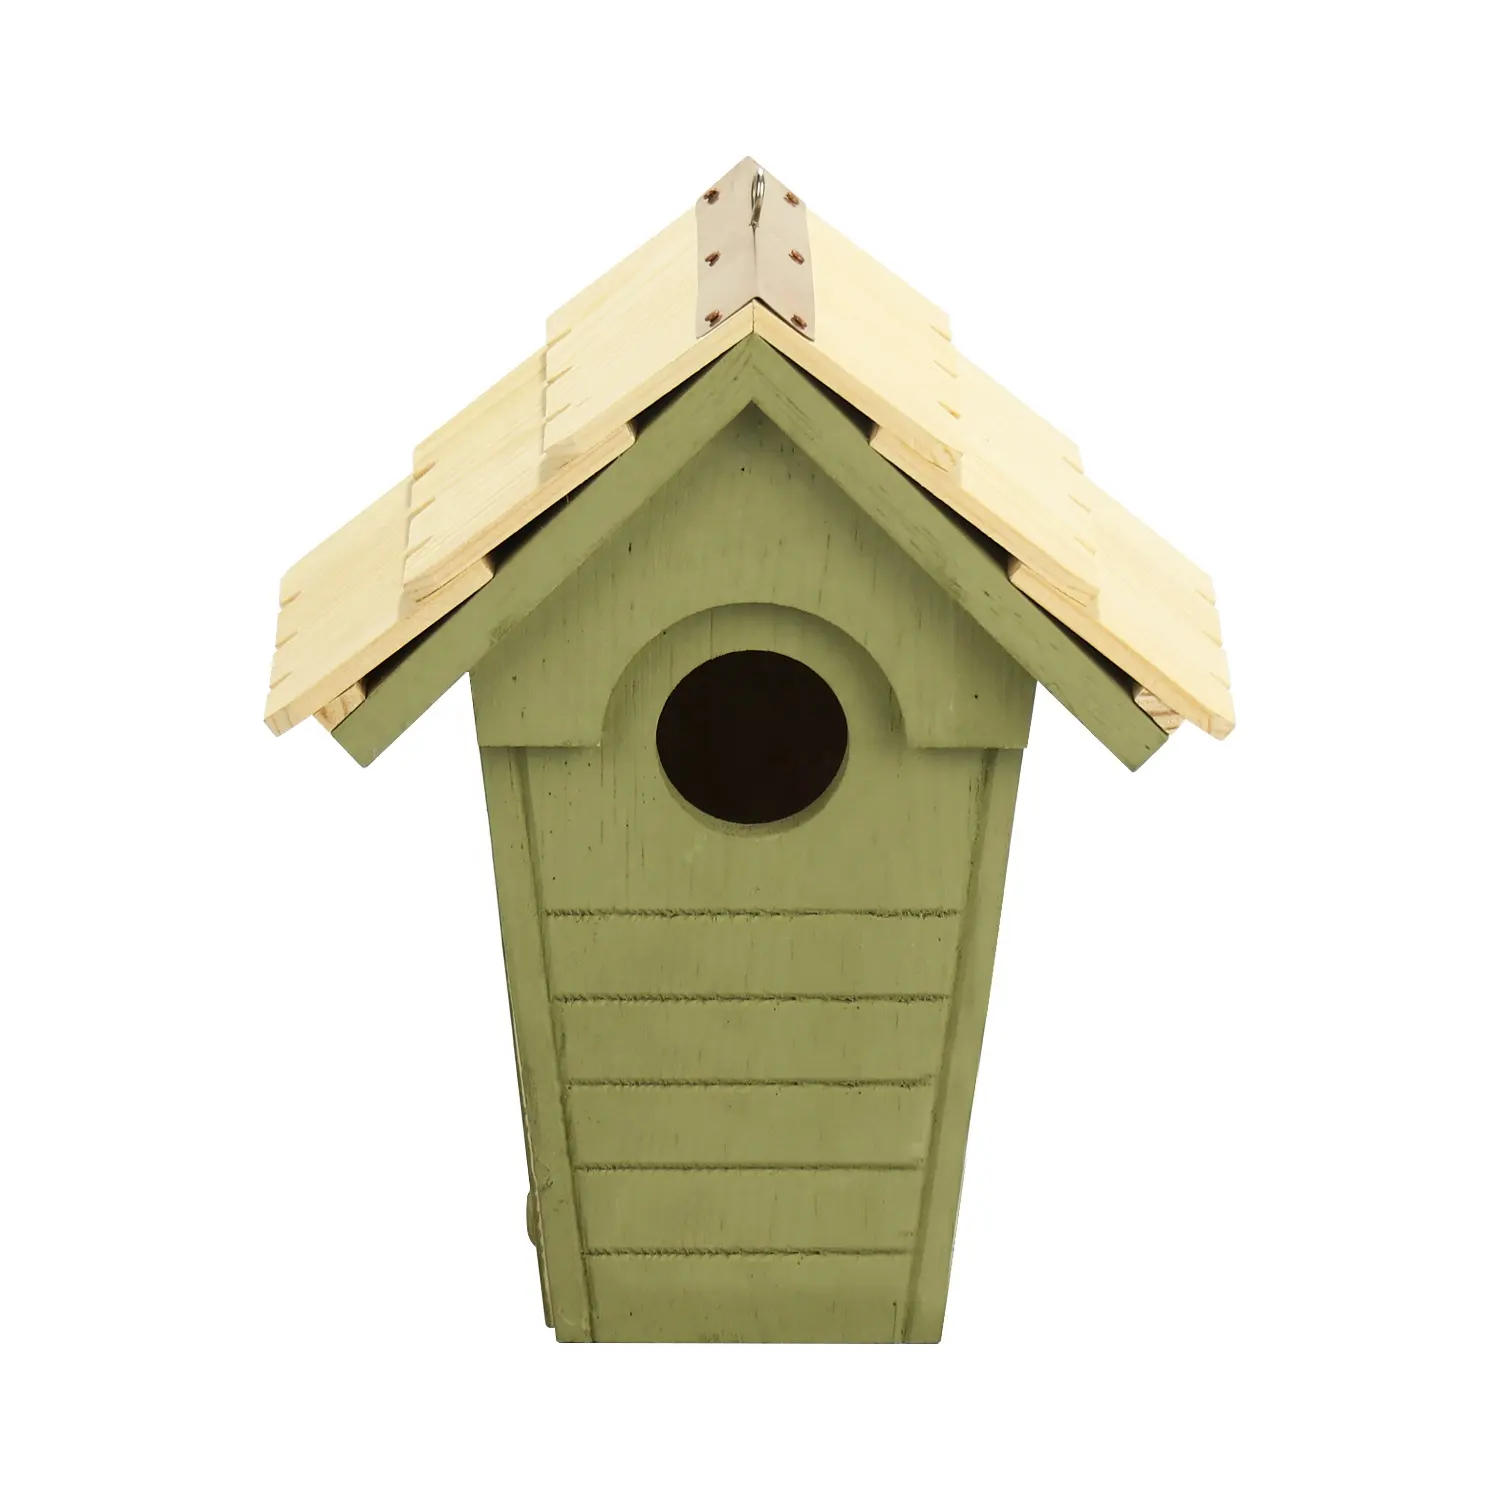 OEM ODM FÁBRICA kit colgante al aire libre jaula de pájaros grande de madera DIY colibrí comedero casa